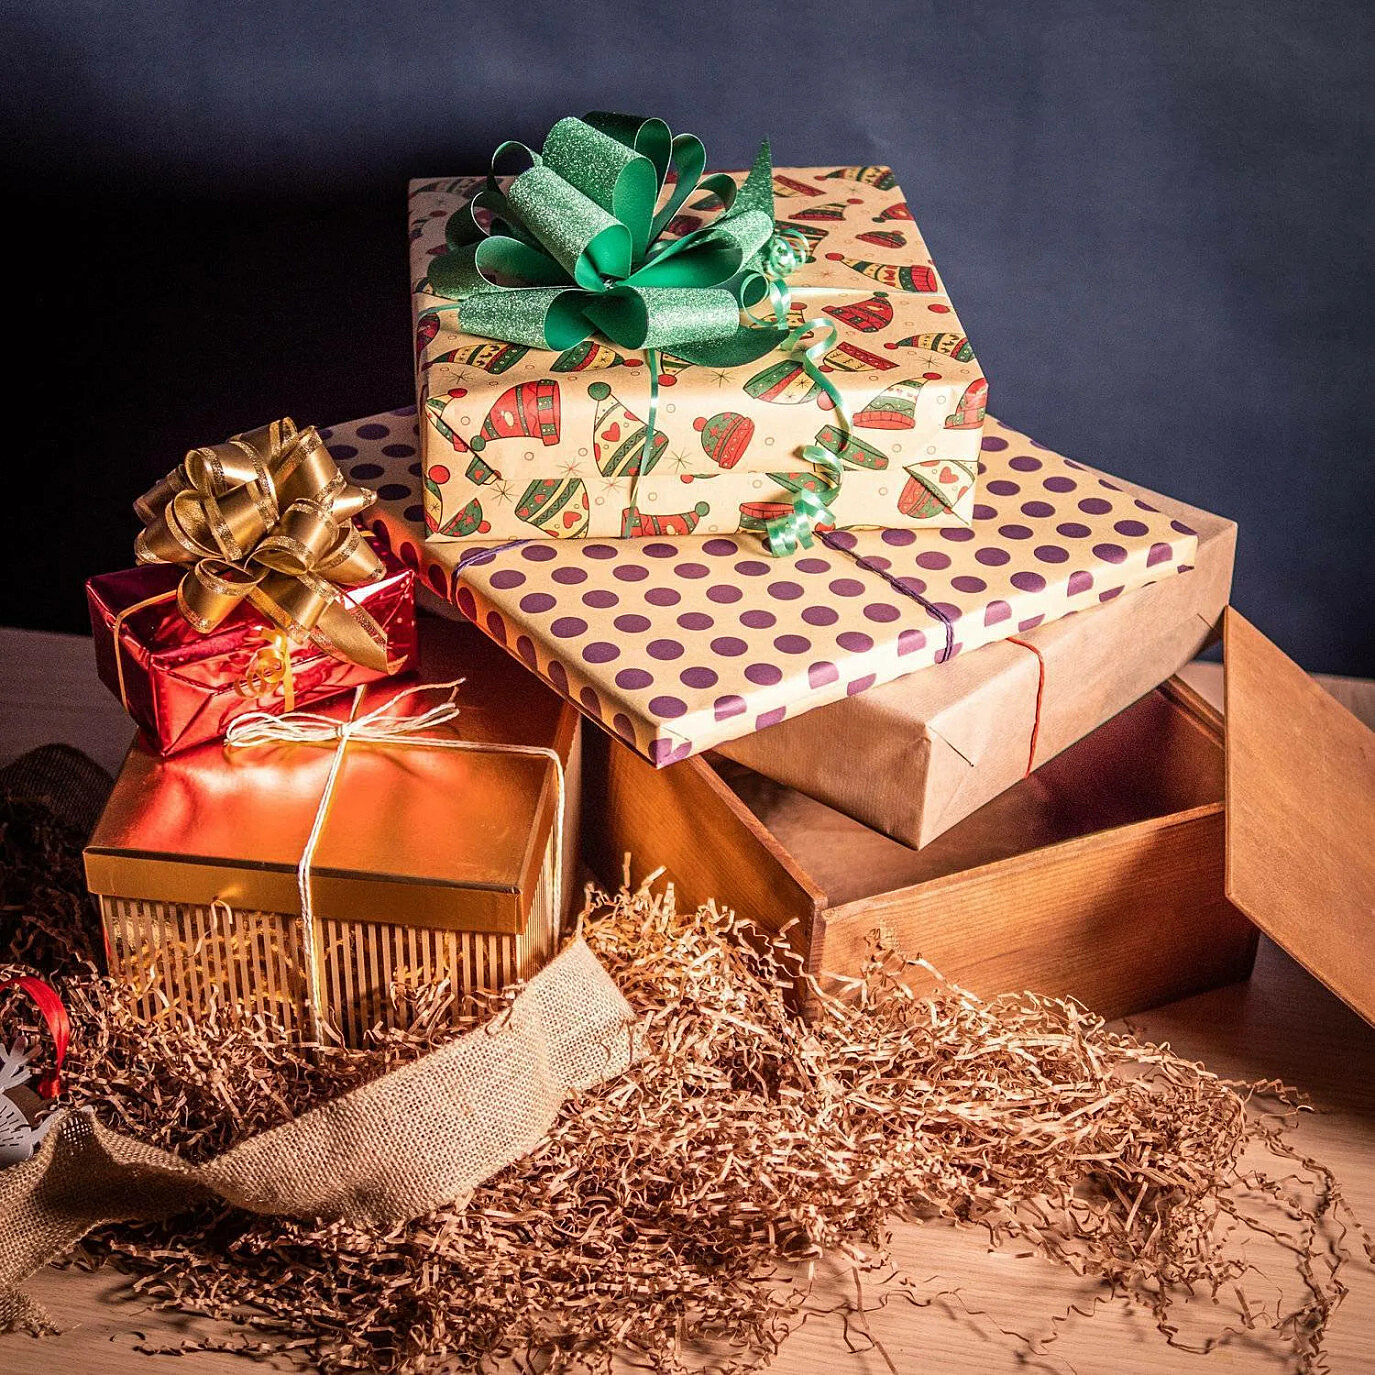 Какие подарки сделать близким на Новый год, если нет денег, рассказали психологи